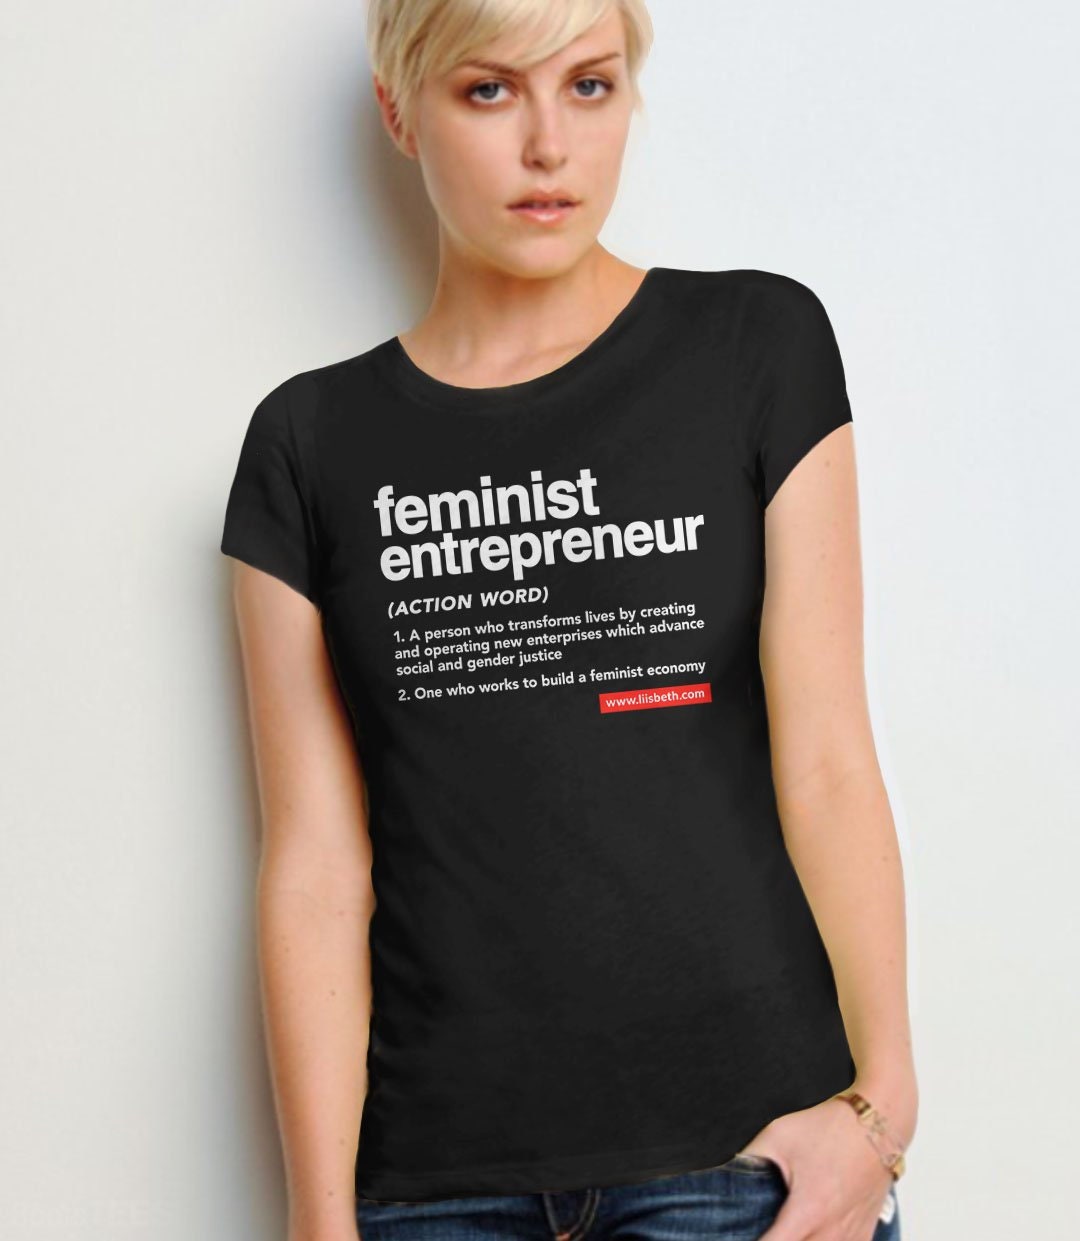 LiisBeth Feminist Entrepreneur T-Shirt for Women, Black Unisex XS by BootsTees